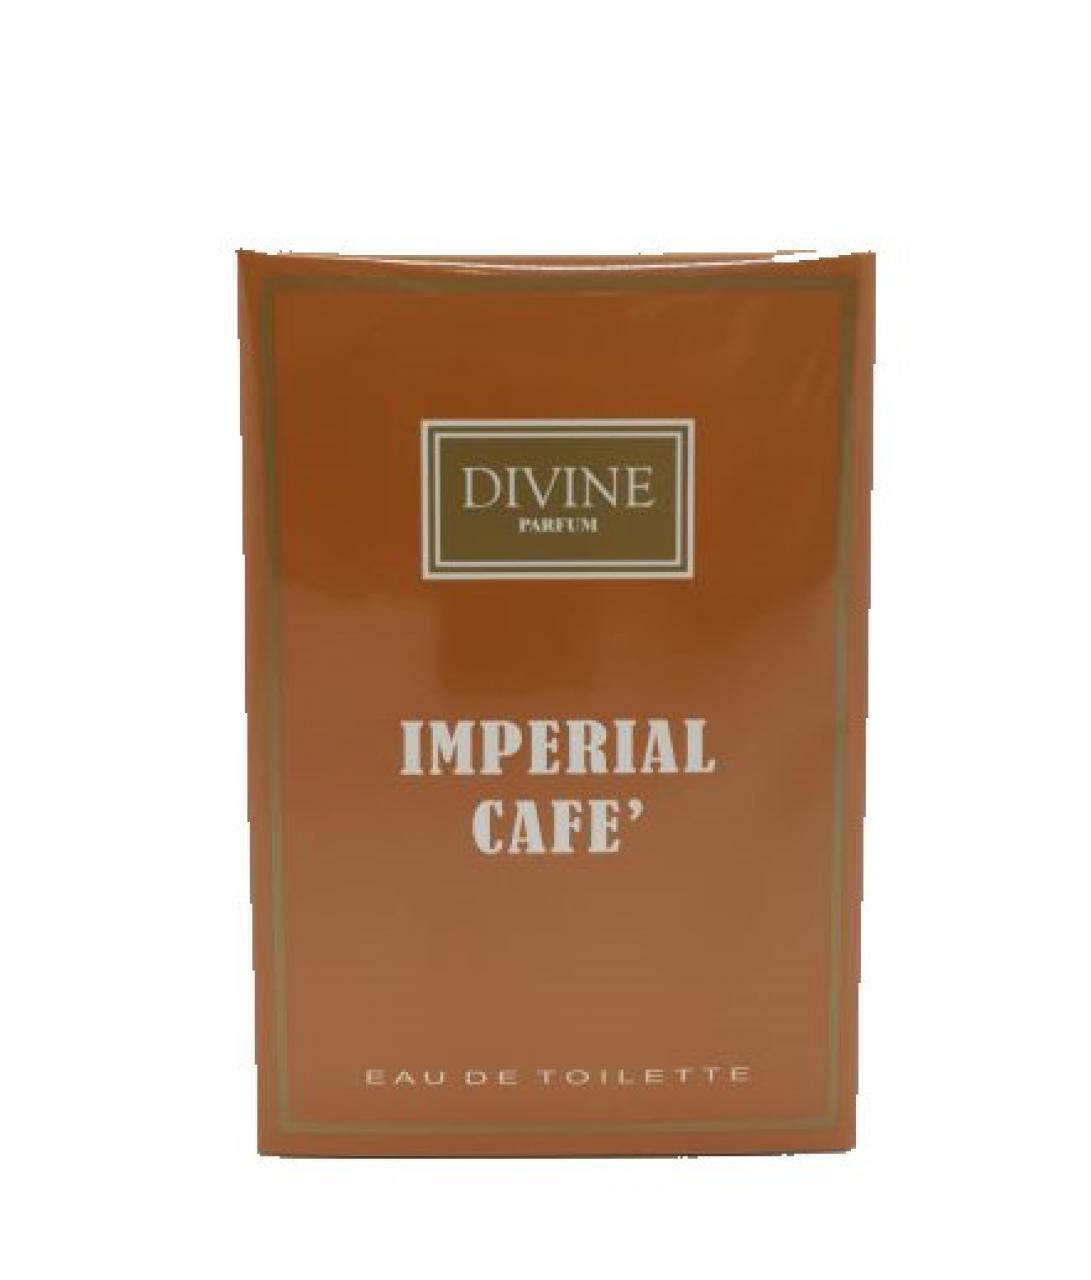 DIVINE PARFUM – IMPERIAL CAFE’